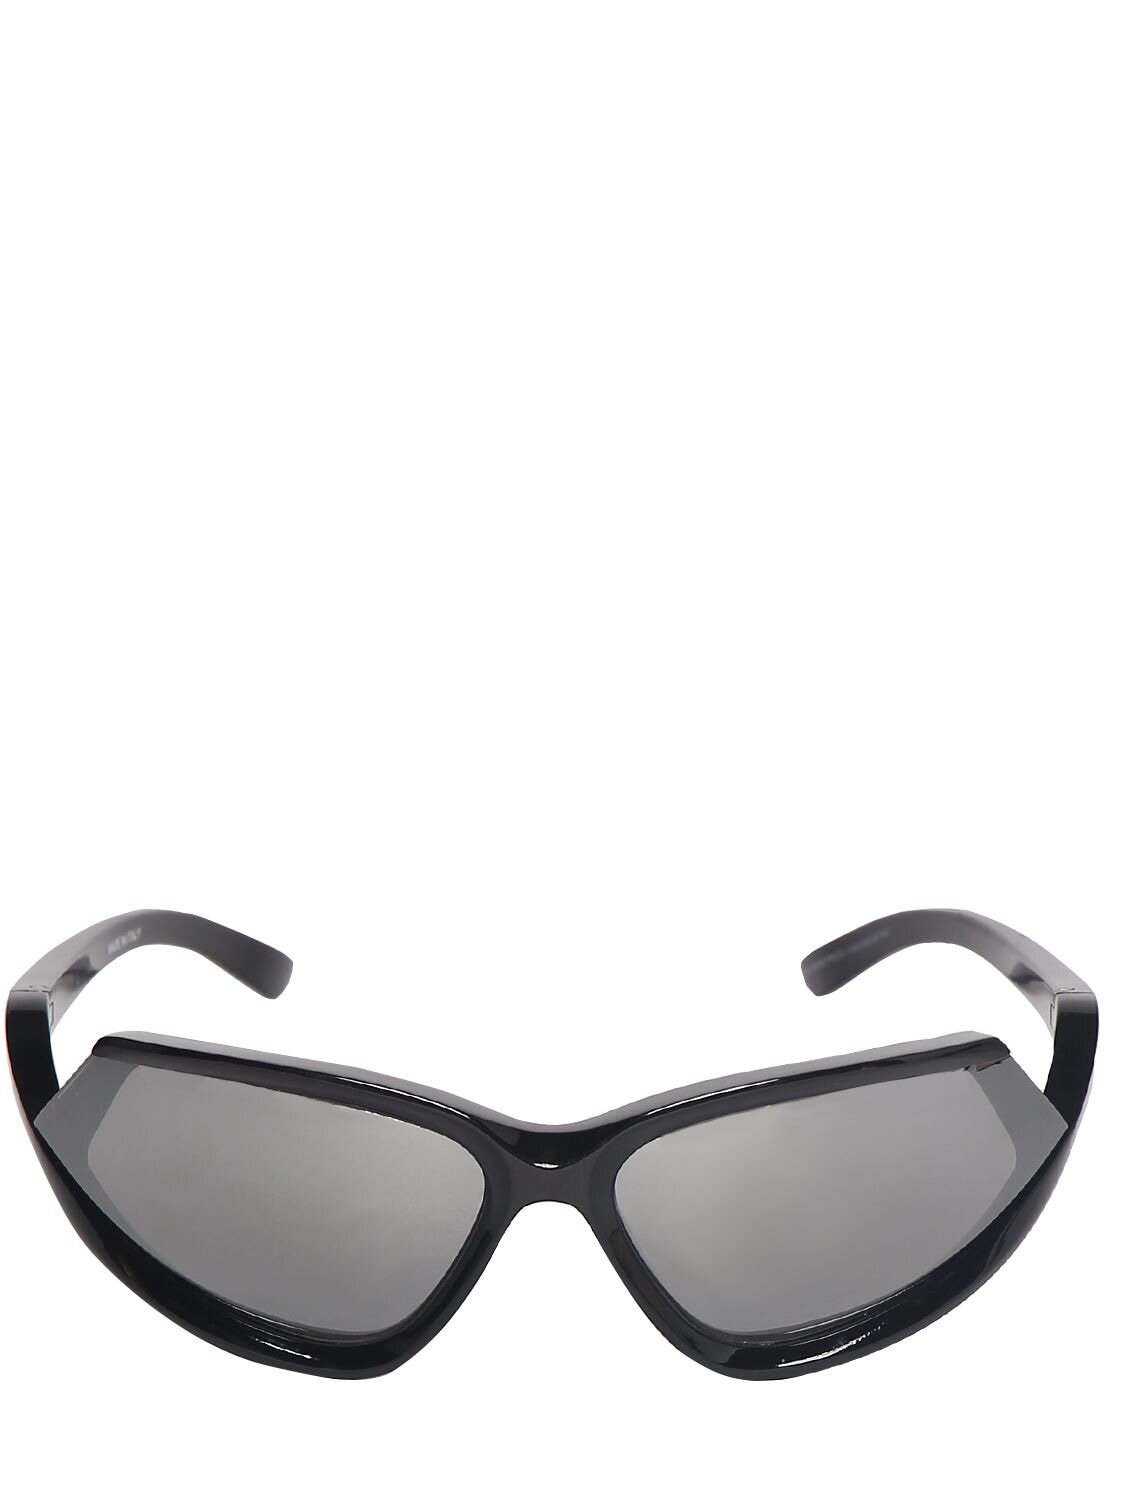 BALENCIAGA 0289s Side Xpander Cat Sunglasses in black